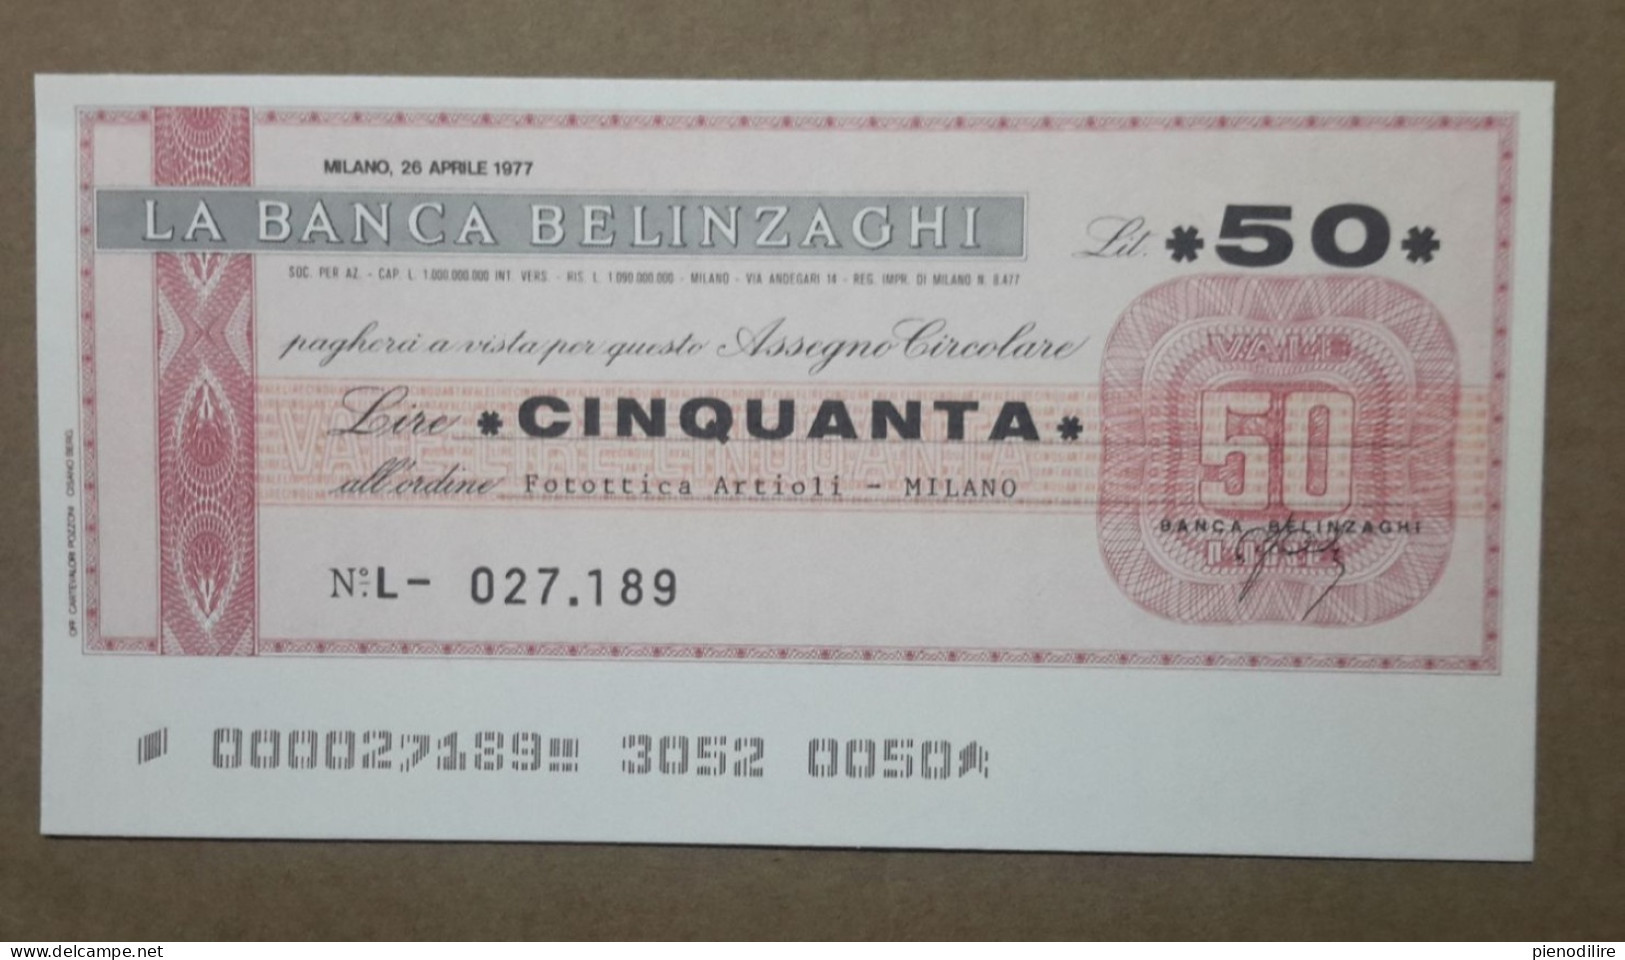 BANCA BELINZAGHI, 50 LIRE 26.04.1977 FOTOTTICA ARTIOLI MILANO (A1.80) - [10] Checks And Mini-checks